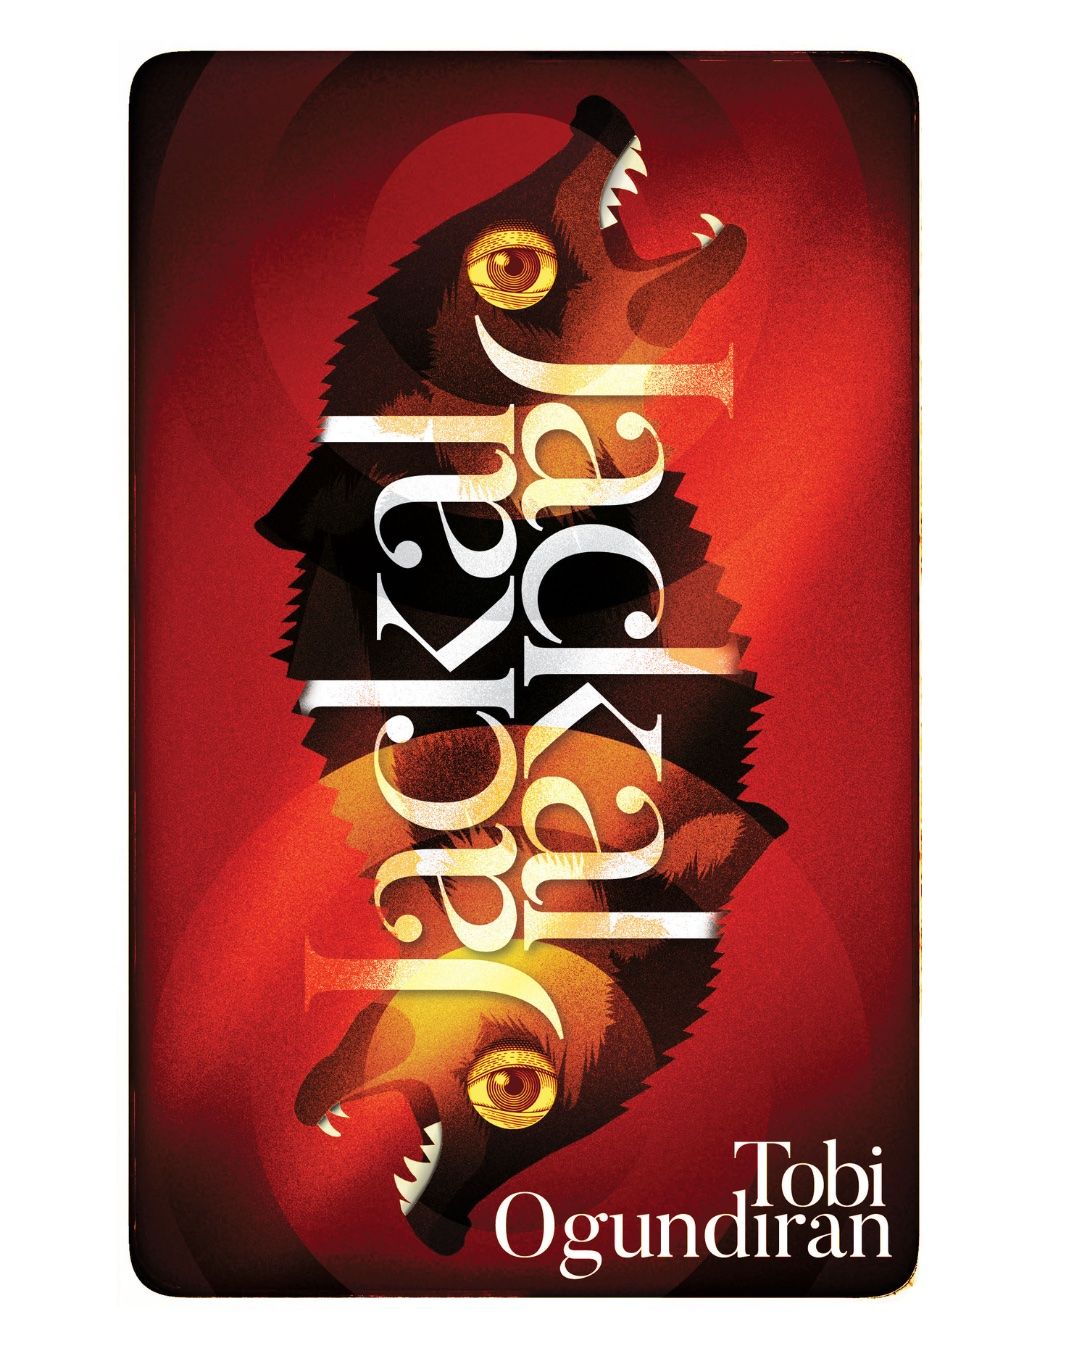 Cover Image of Jackal, Jackal by Tobi Ogundiran